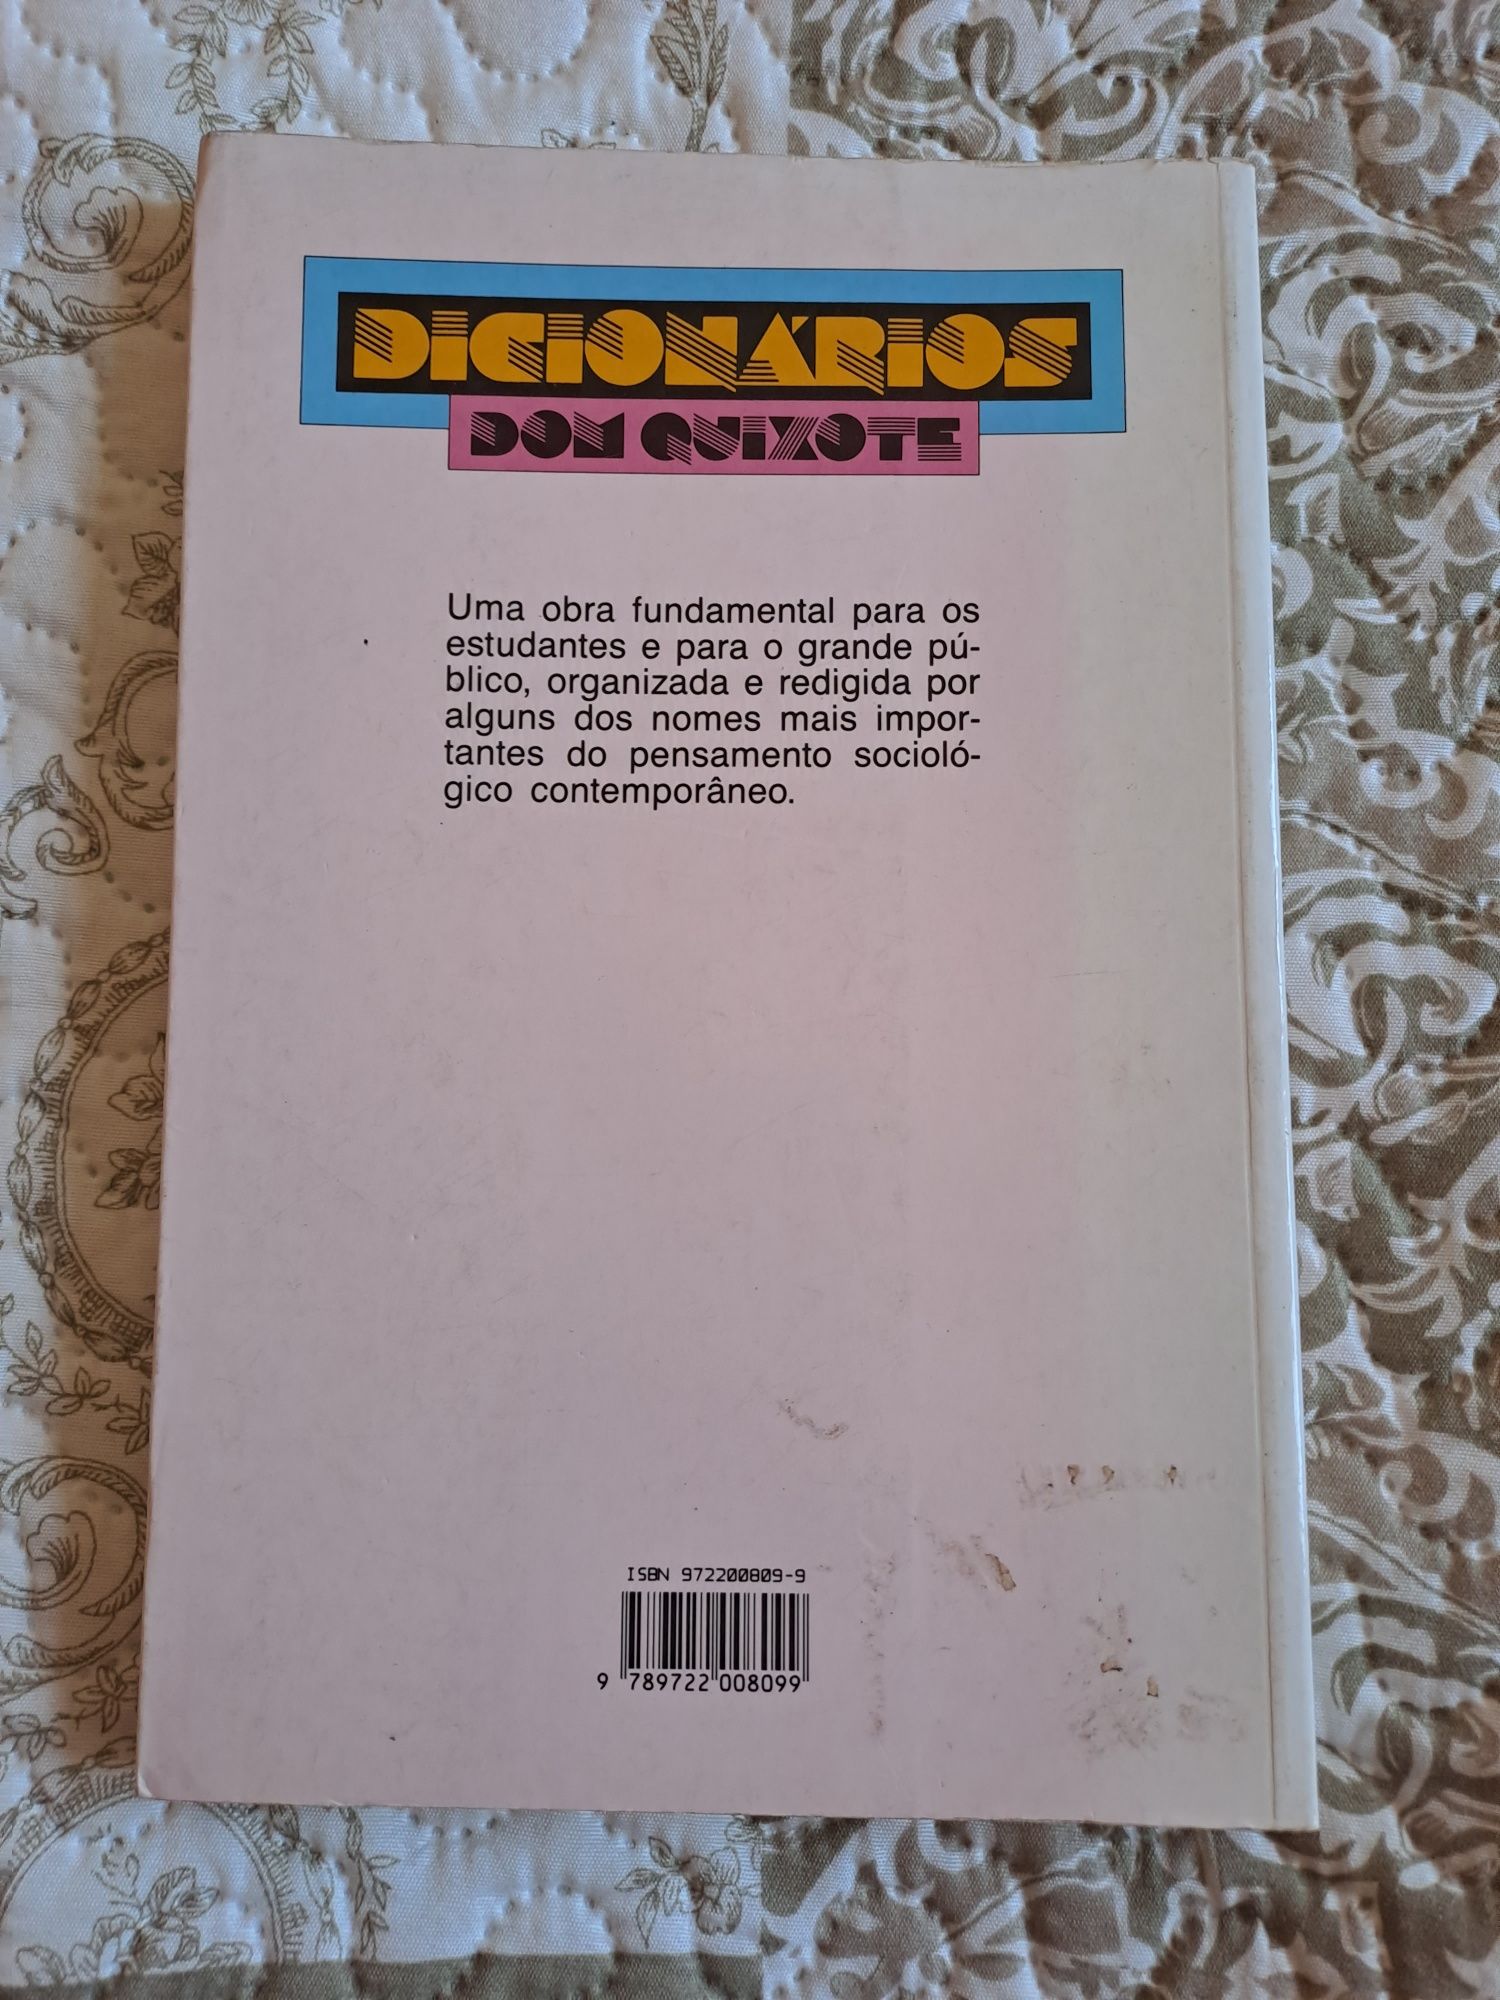 Livro "Dicionário de Sociologia" de Raymond Boudon et al.